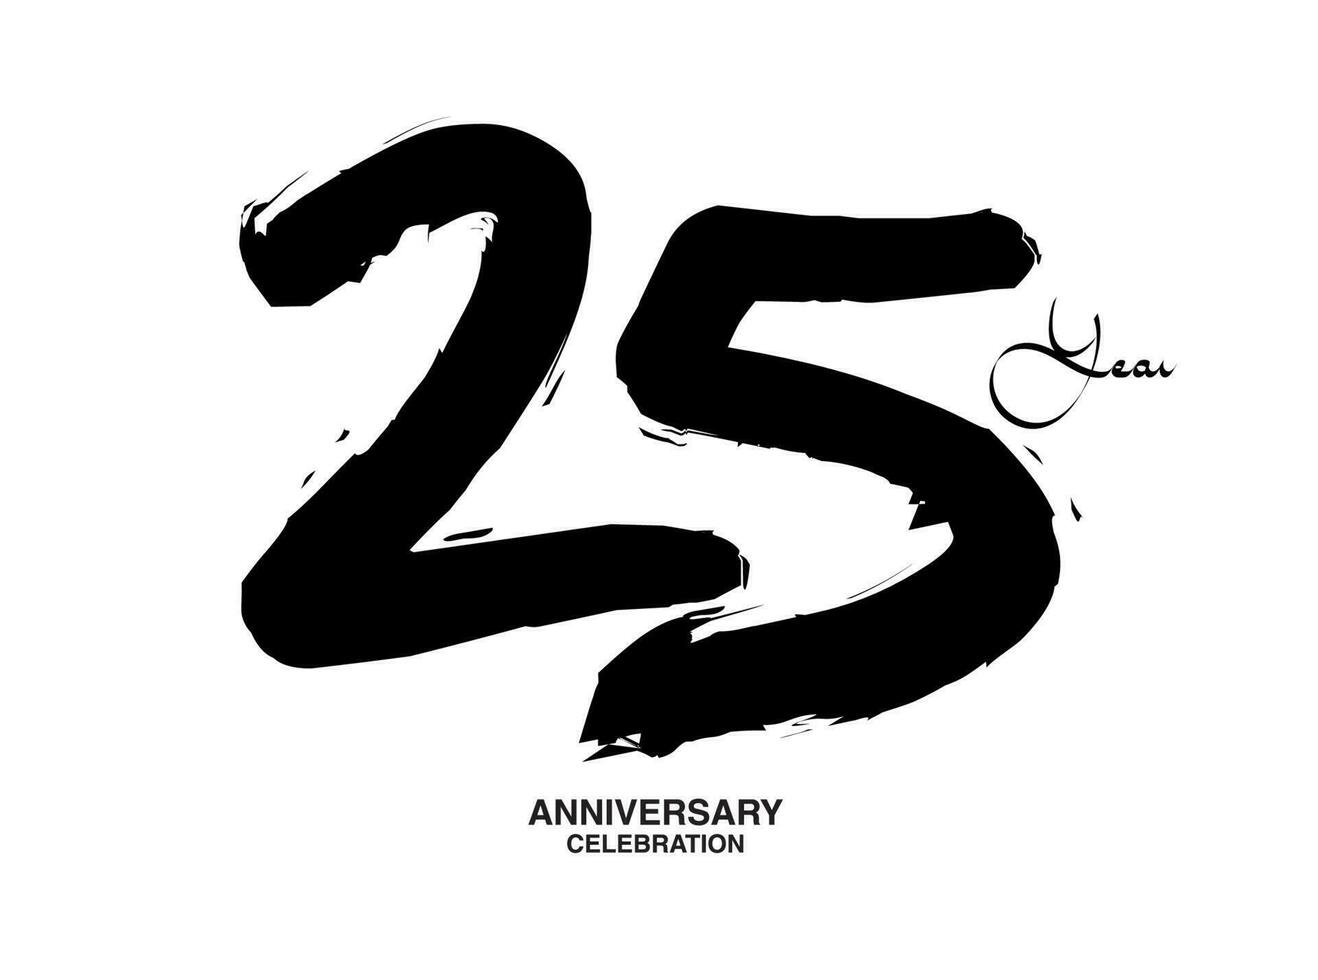 25 Jahre Jahrestag Feier Vektor Vorlage, 25 Nummer Logo Design, 25 Geburtstag, schwarz Beschriftung Zahlen Bürste Zeichnung Hand gezeichnet skizzieren, schwarz Nummer, Jahrestag Vektor Illustration